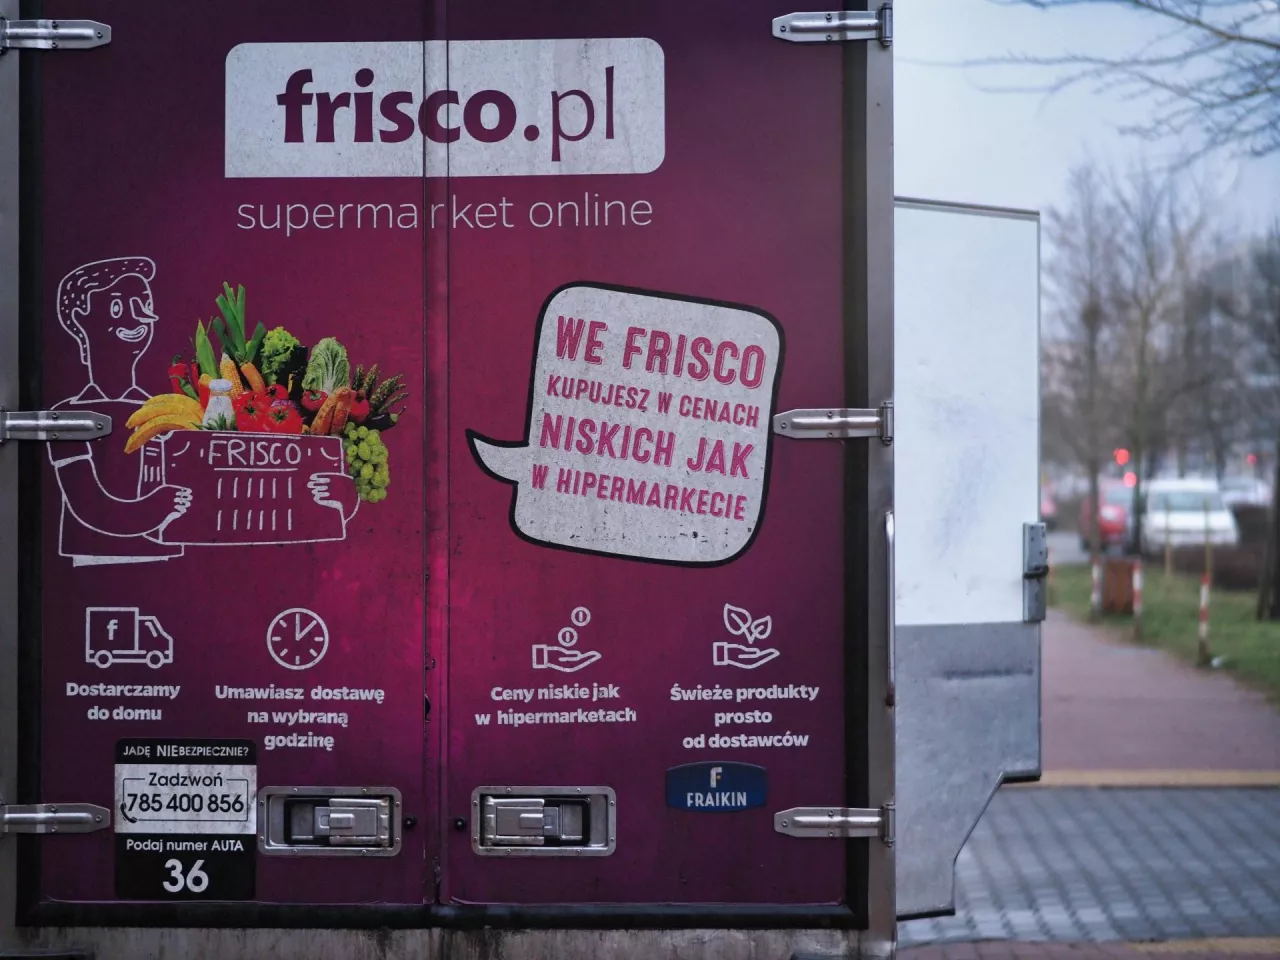 Frisco.pl wycofało się z Bydgoszczy (fot. ŁR/wiadomoscihandlowe.pl)